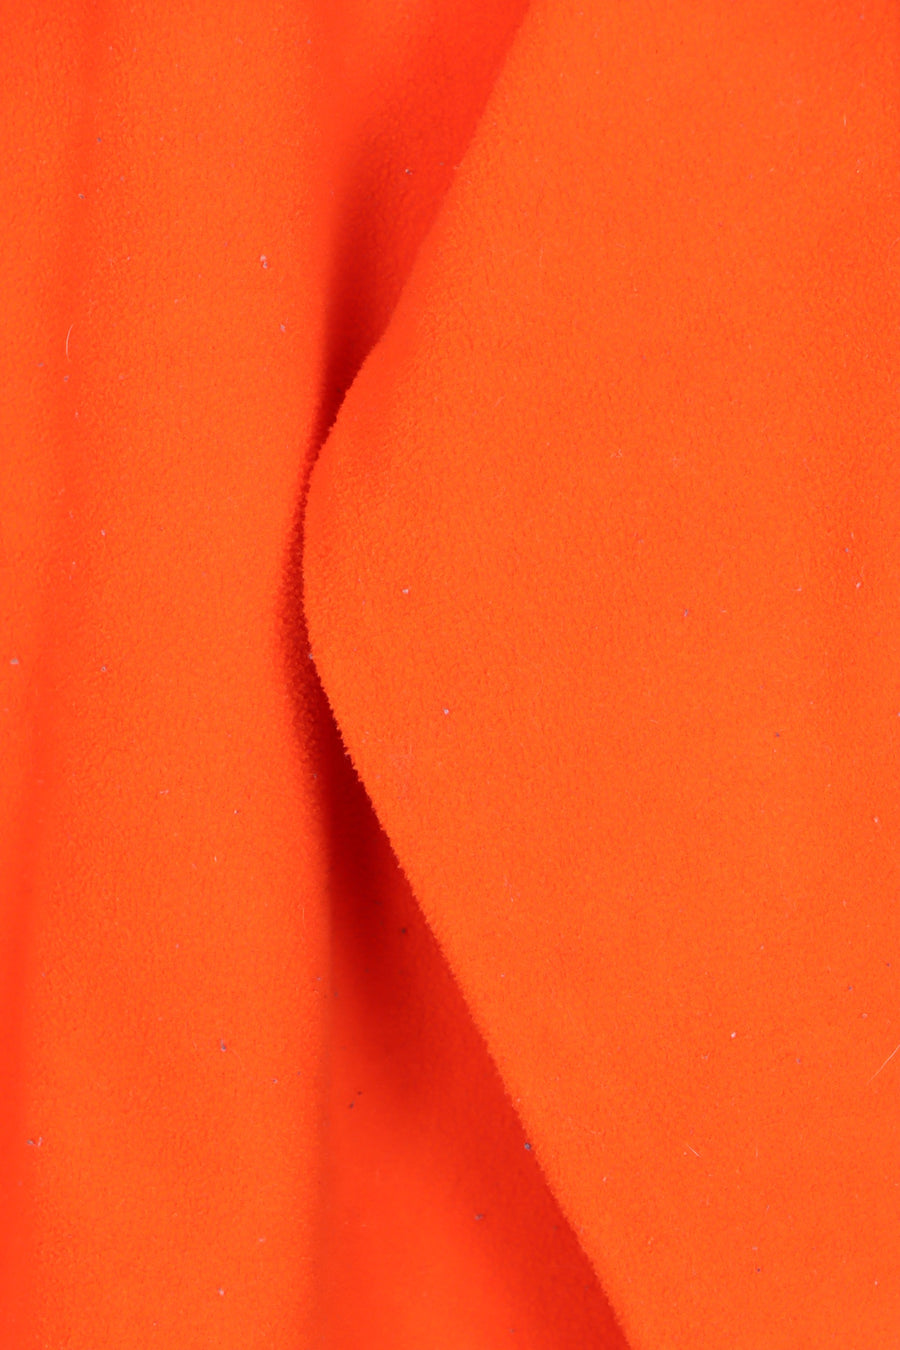 RALPH LAUREN POLO JEANS Orange 1/4 Zip Fleece Sweatshirt (XL)